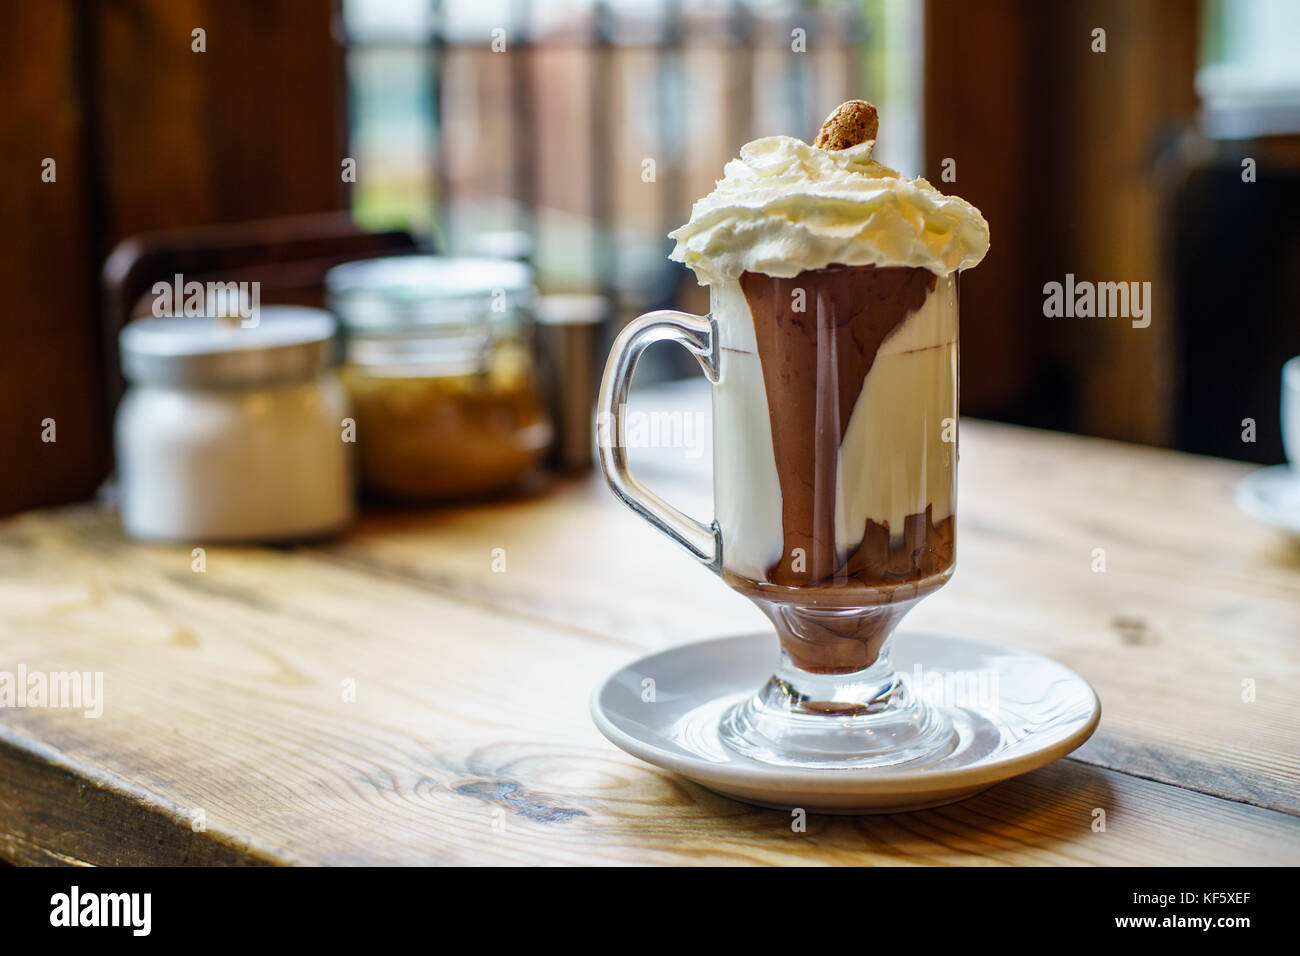 Kaffee Mocca von Nutella, Espresso und Milch Stockfotografie - Alamy